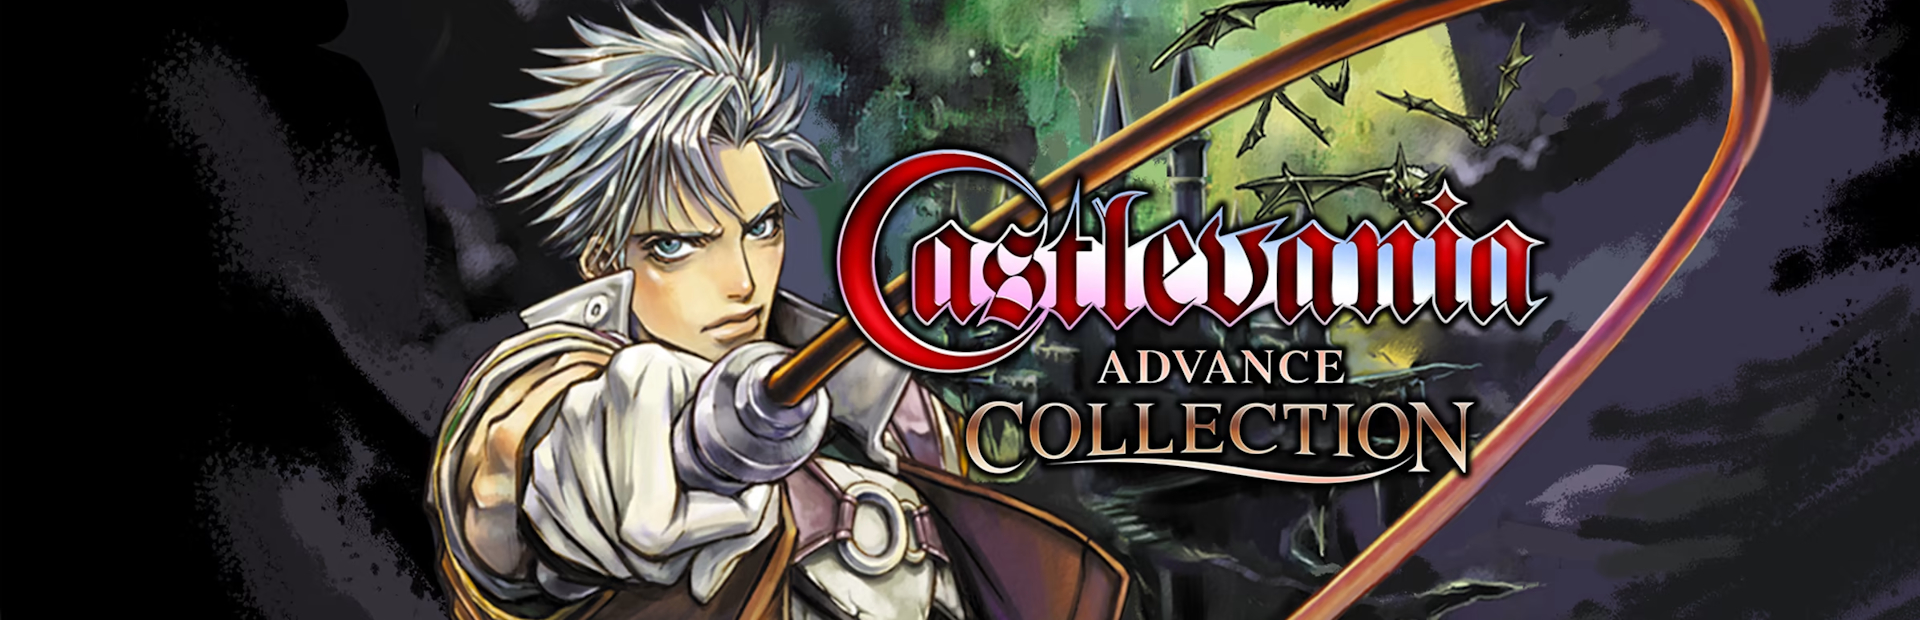 دانلود بازی Castlevania Advanced Collection برای پی سی | گیمباتو